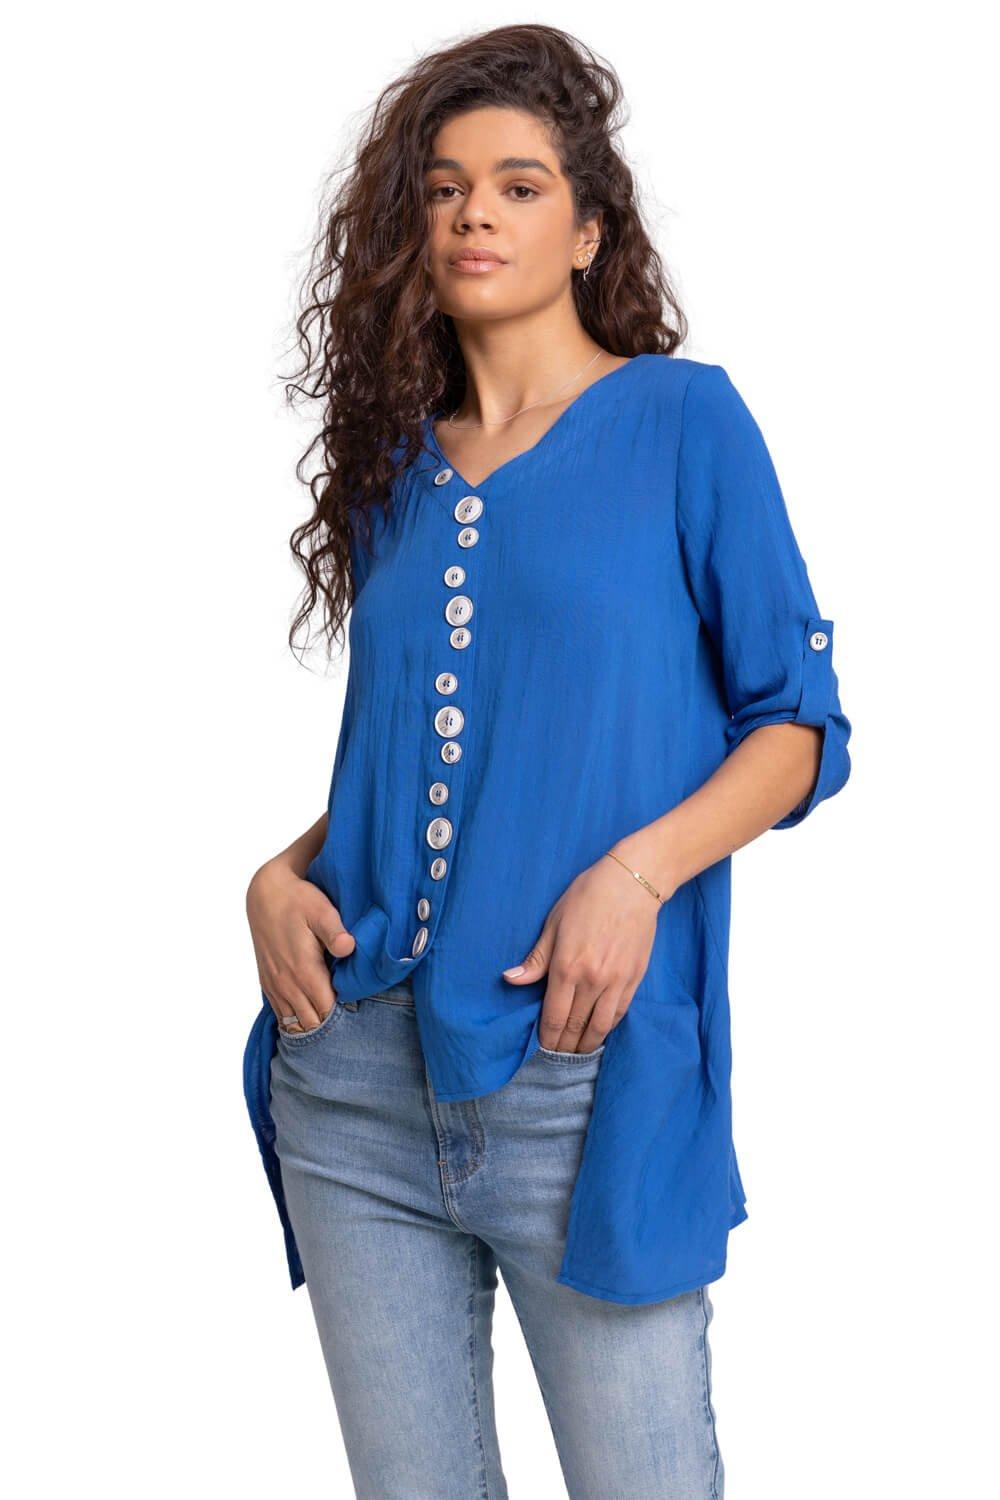 Асимметричный топ с абстрактными пуговицами Roman, синий женская ажурная рубашка с принтом змеиной кожи длинная блузка женский сексуальный асимметричный топ с v образным вырезом женская одежда